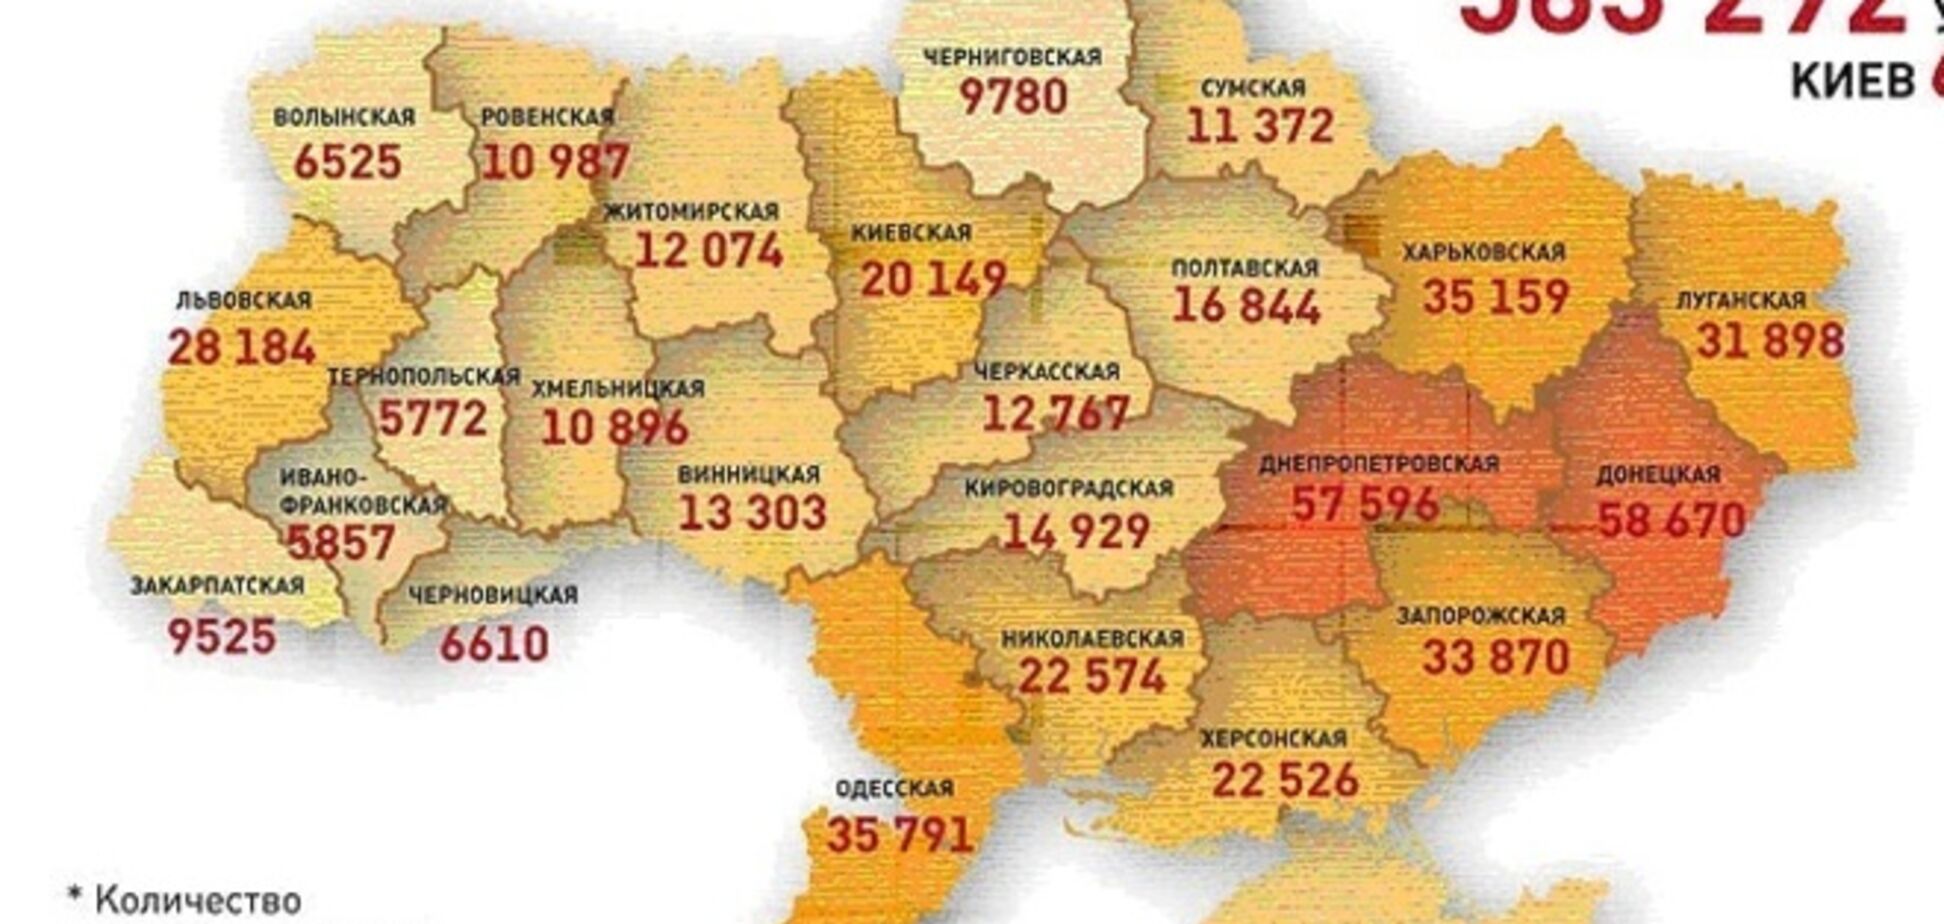 З'явилася кримінальна мапа України: схід лідирує